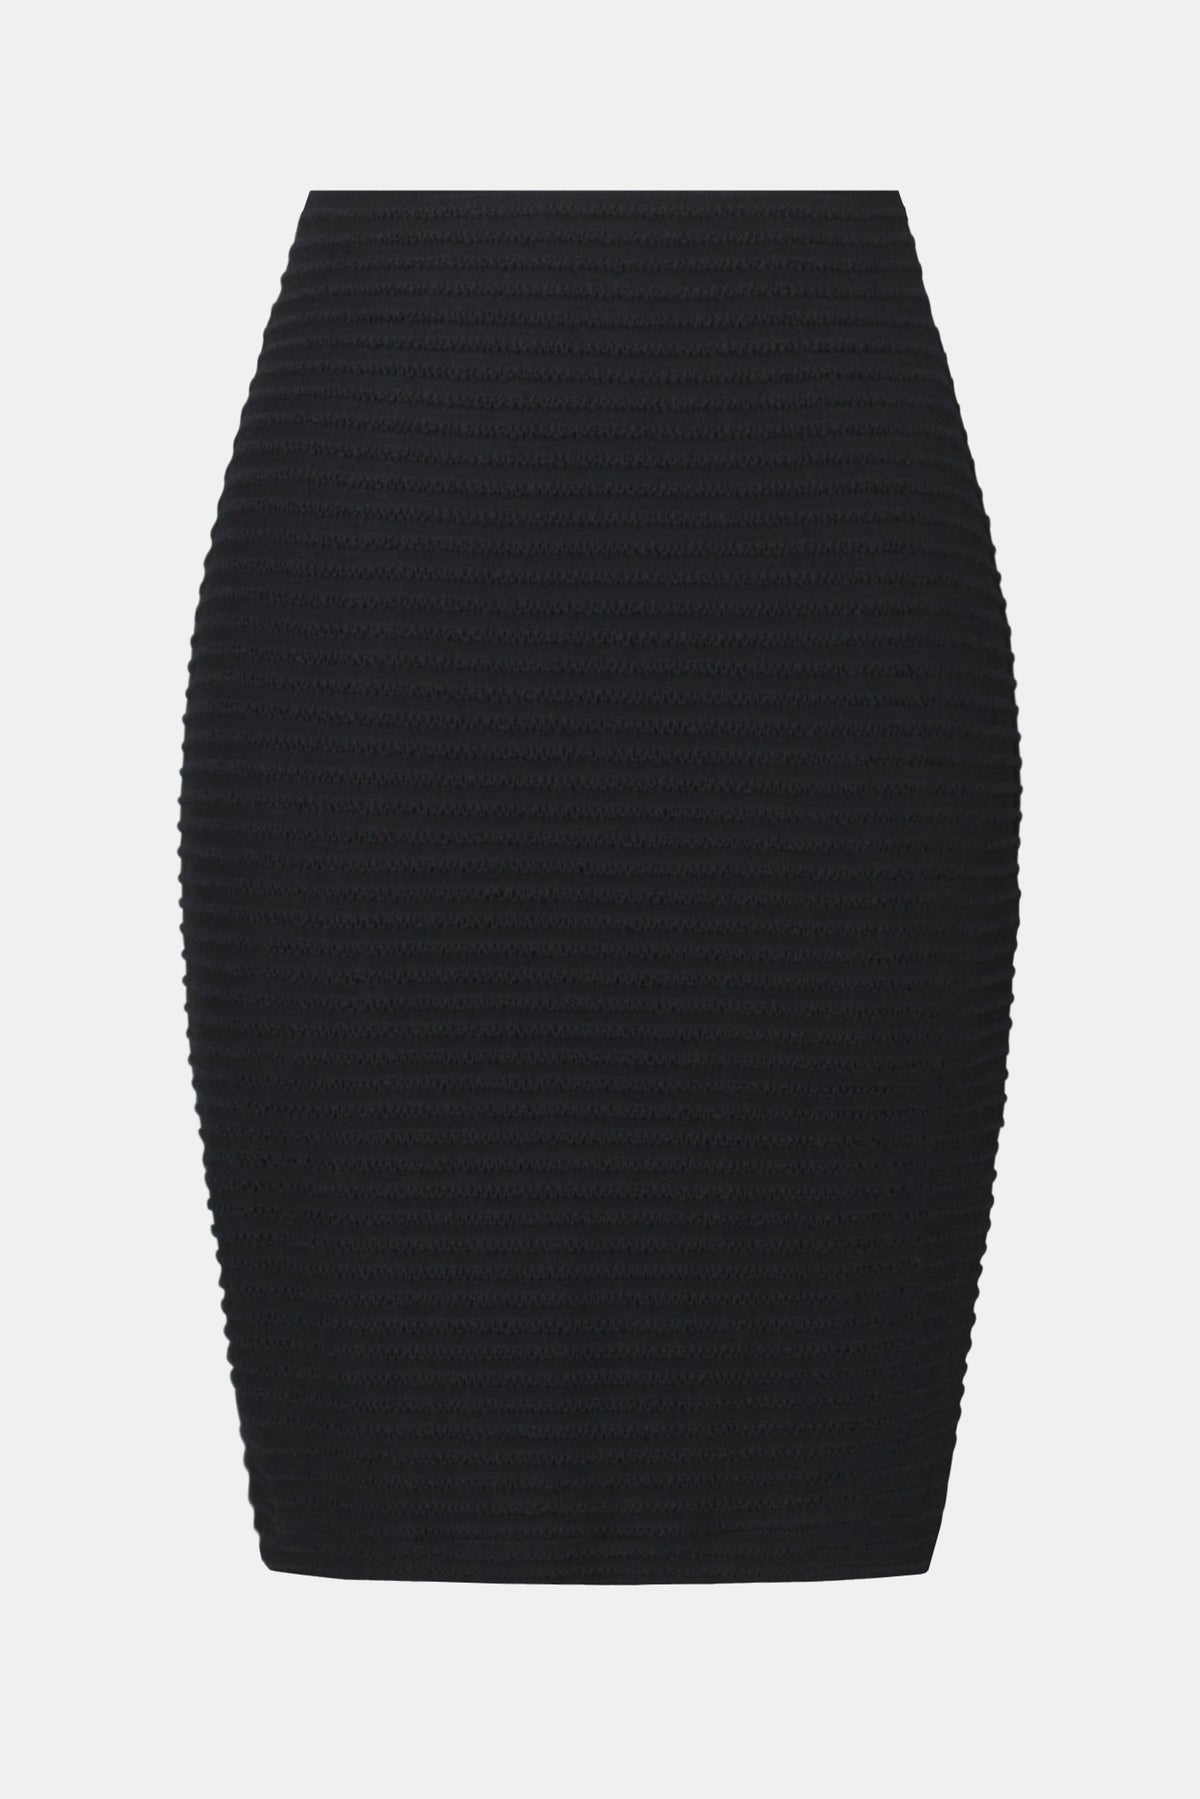 Horizonal Textured Stripe Skirt